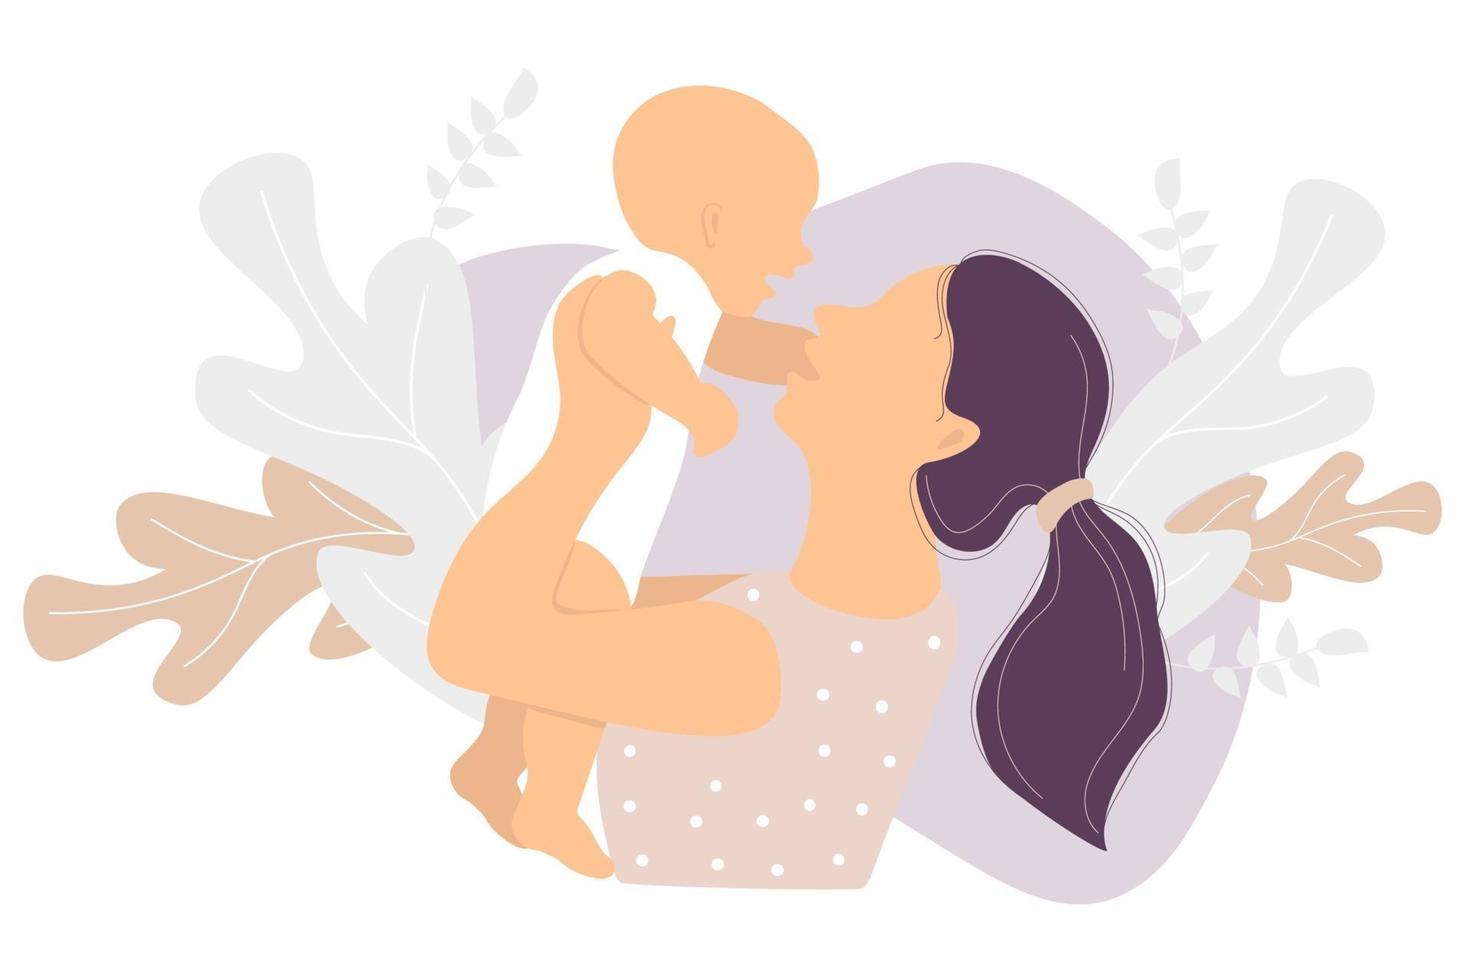 maternità. donna felice e un bambino piccolo in braccio sullo sfondo di un decoro tropicale di foglie e piante. illustrazione vettoriale. concetto - nuova vita e felice mamma e bambino. illustrazione piatta vettore